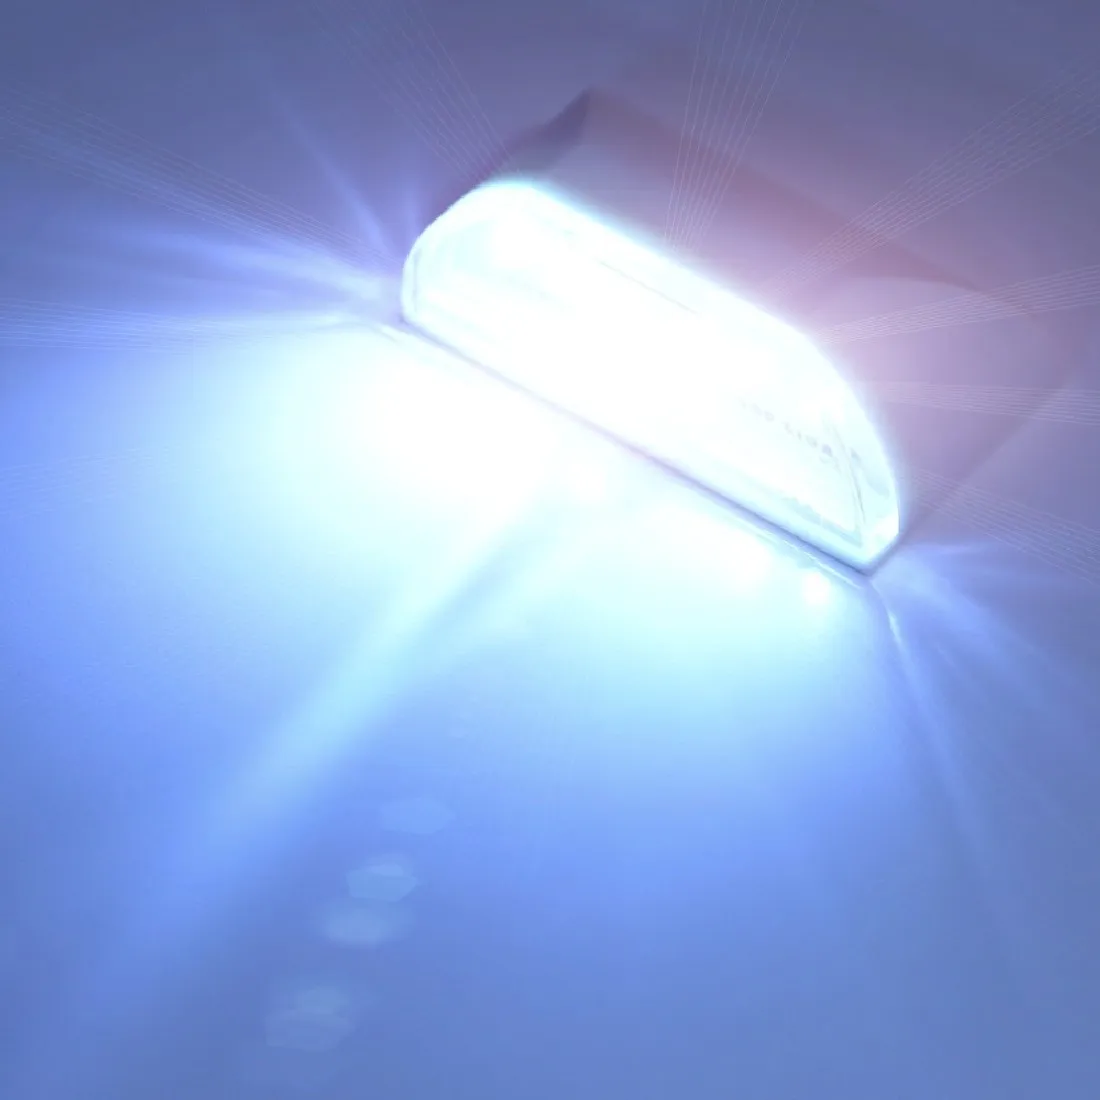 Лампа Ночной светильник интеллигентая(ый) Авто PIR дверной замок, индукционные лампы Дверь Замочная скважина ИК движения Сенсор тепла 4 светодиодный умный светильник